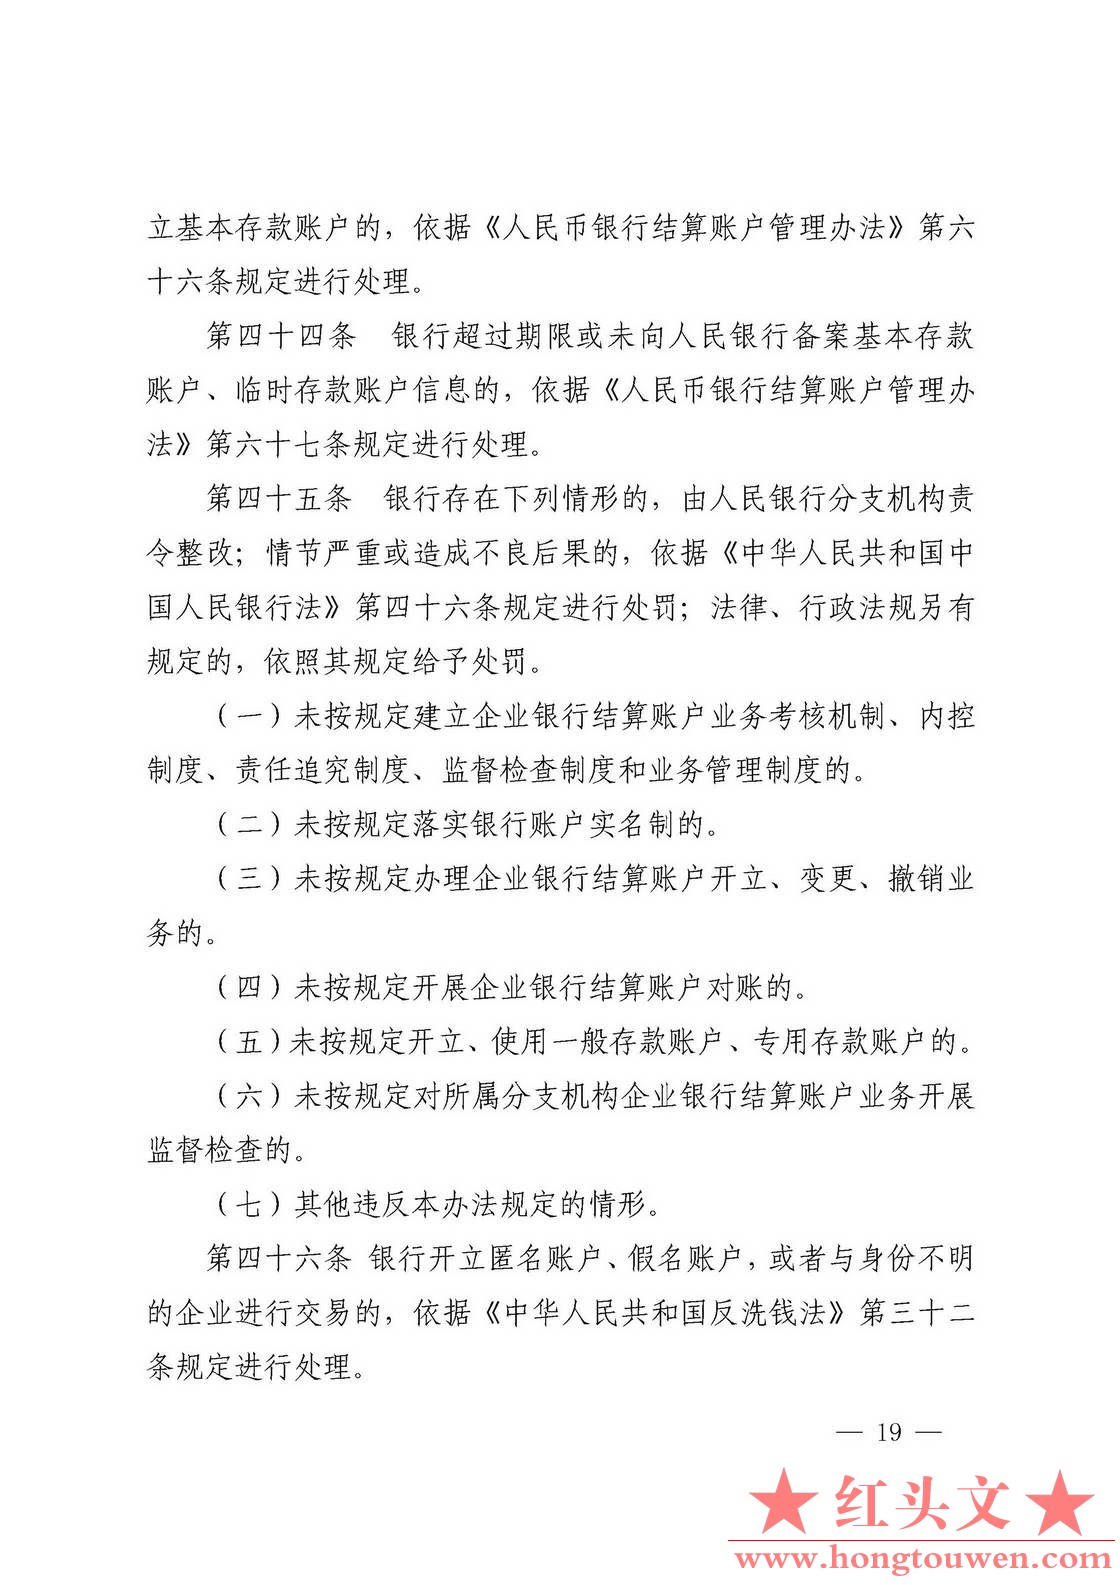 银发[2019]41号-中国人民银行关于取消企业银行账户许可的通知_页面_19.jpg.jpg